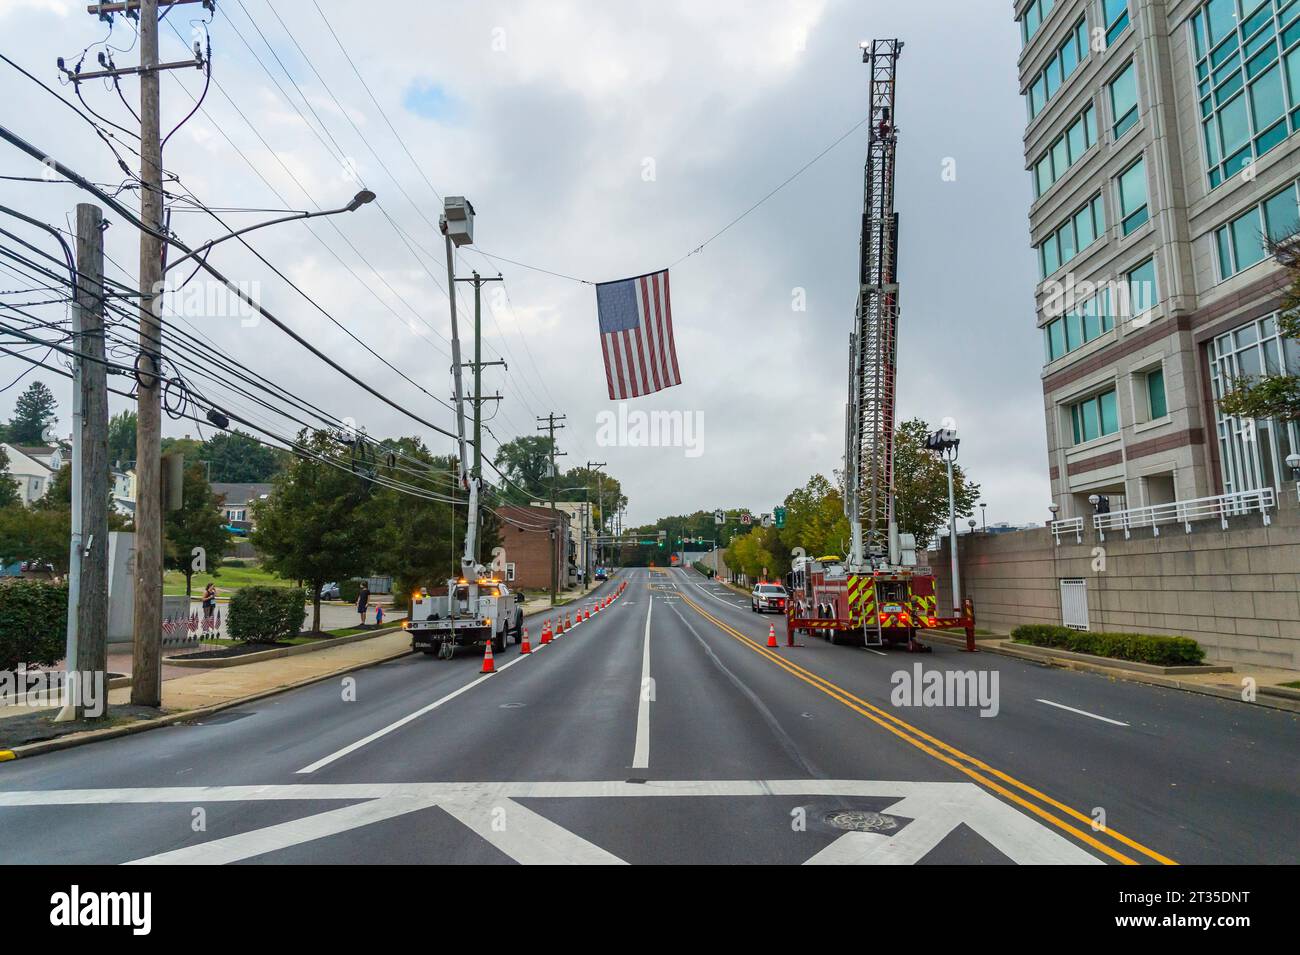 Drapeau américain suspendu à un camion de pompiers au-dessus d'une rue fermée en préparation pour la course de 5K, Conshohocken, PA États-Unis Banque D'Images